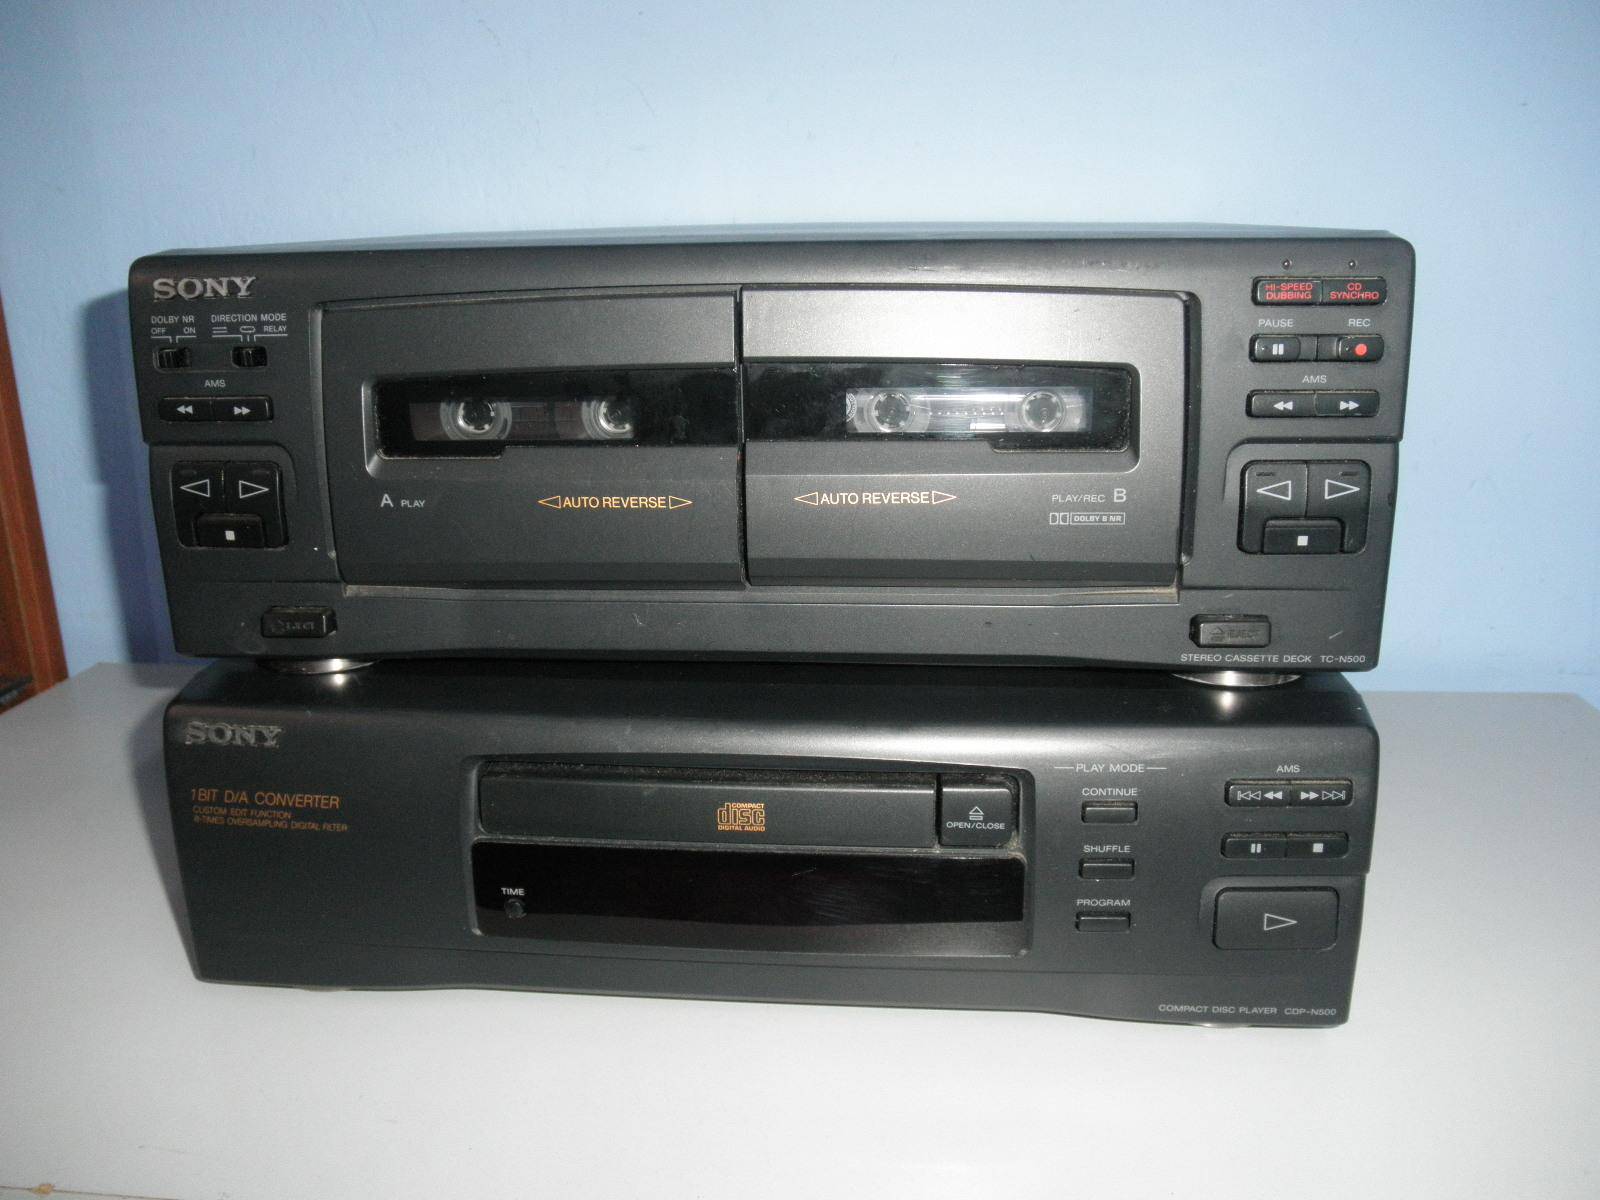 Sony CDP-H500